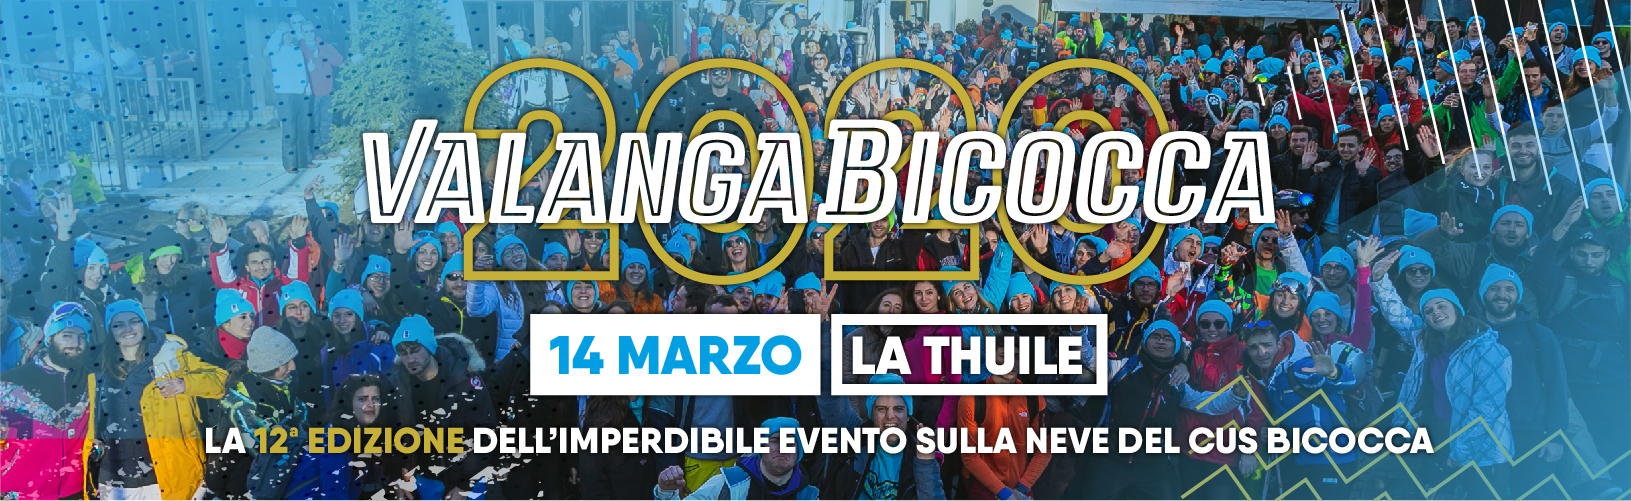 Valanga Bicocca 2020 • 14 marzo a La Thuile